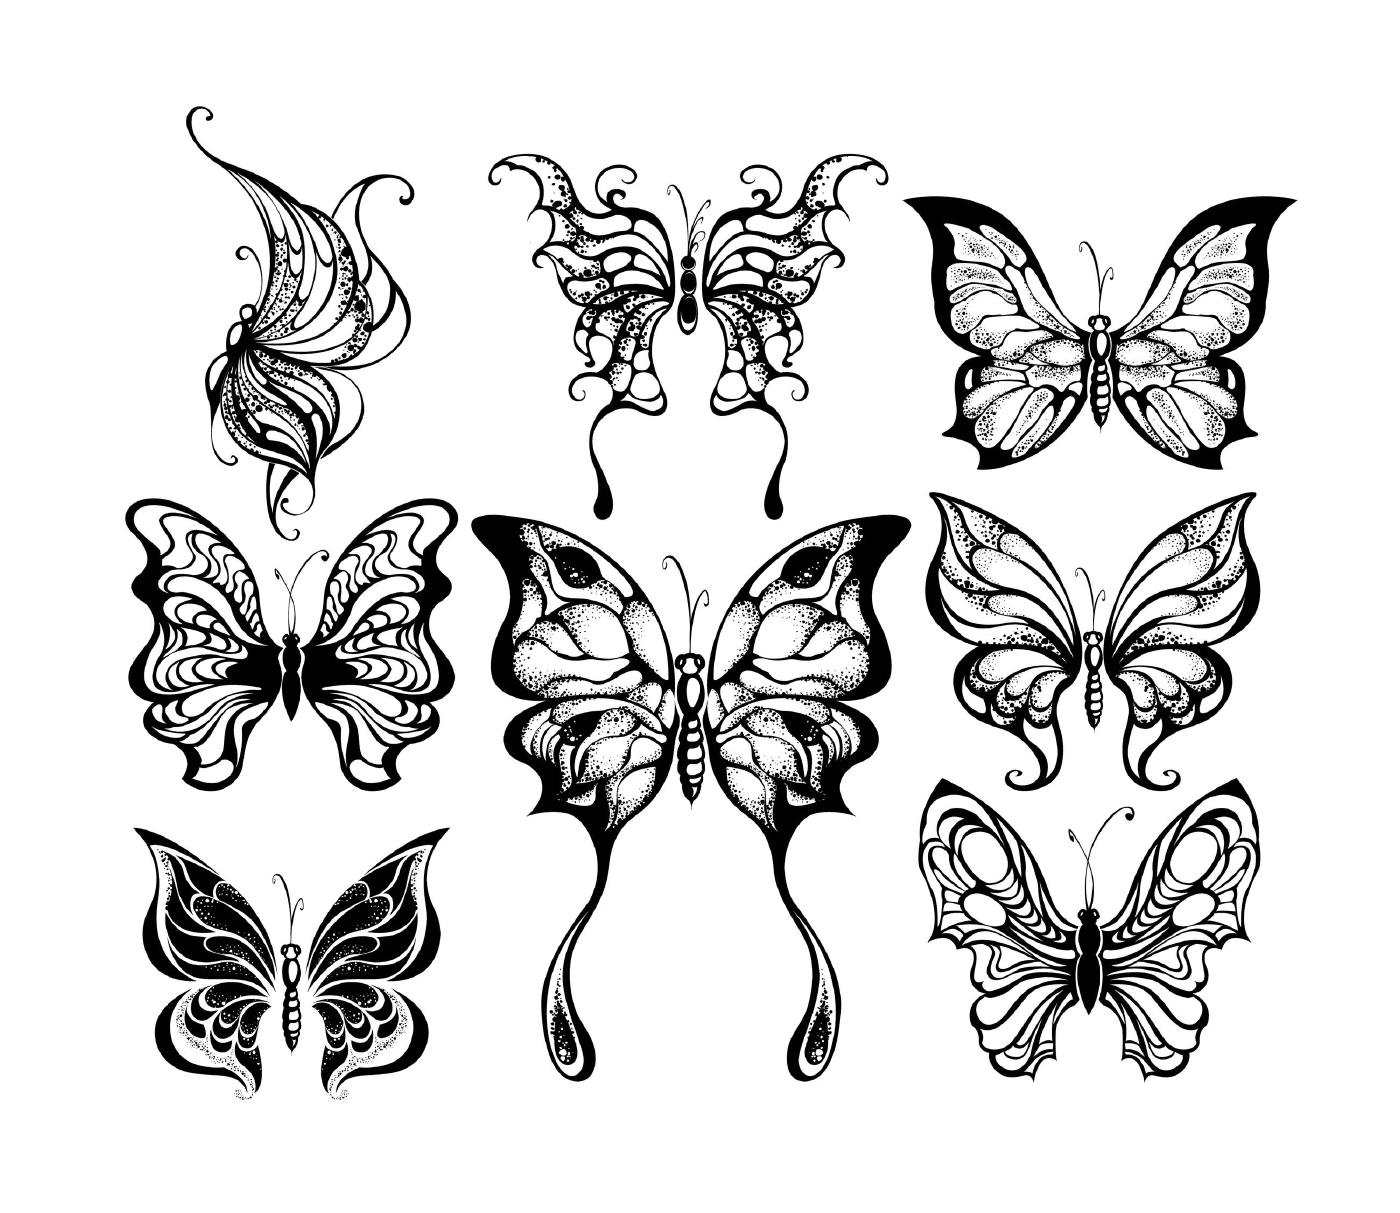  Un conjunto de nueve mariposas en blanco y negro 